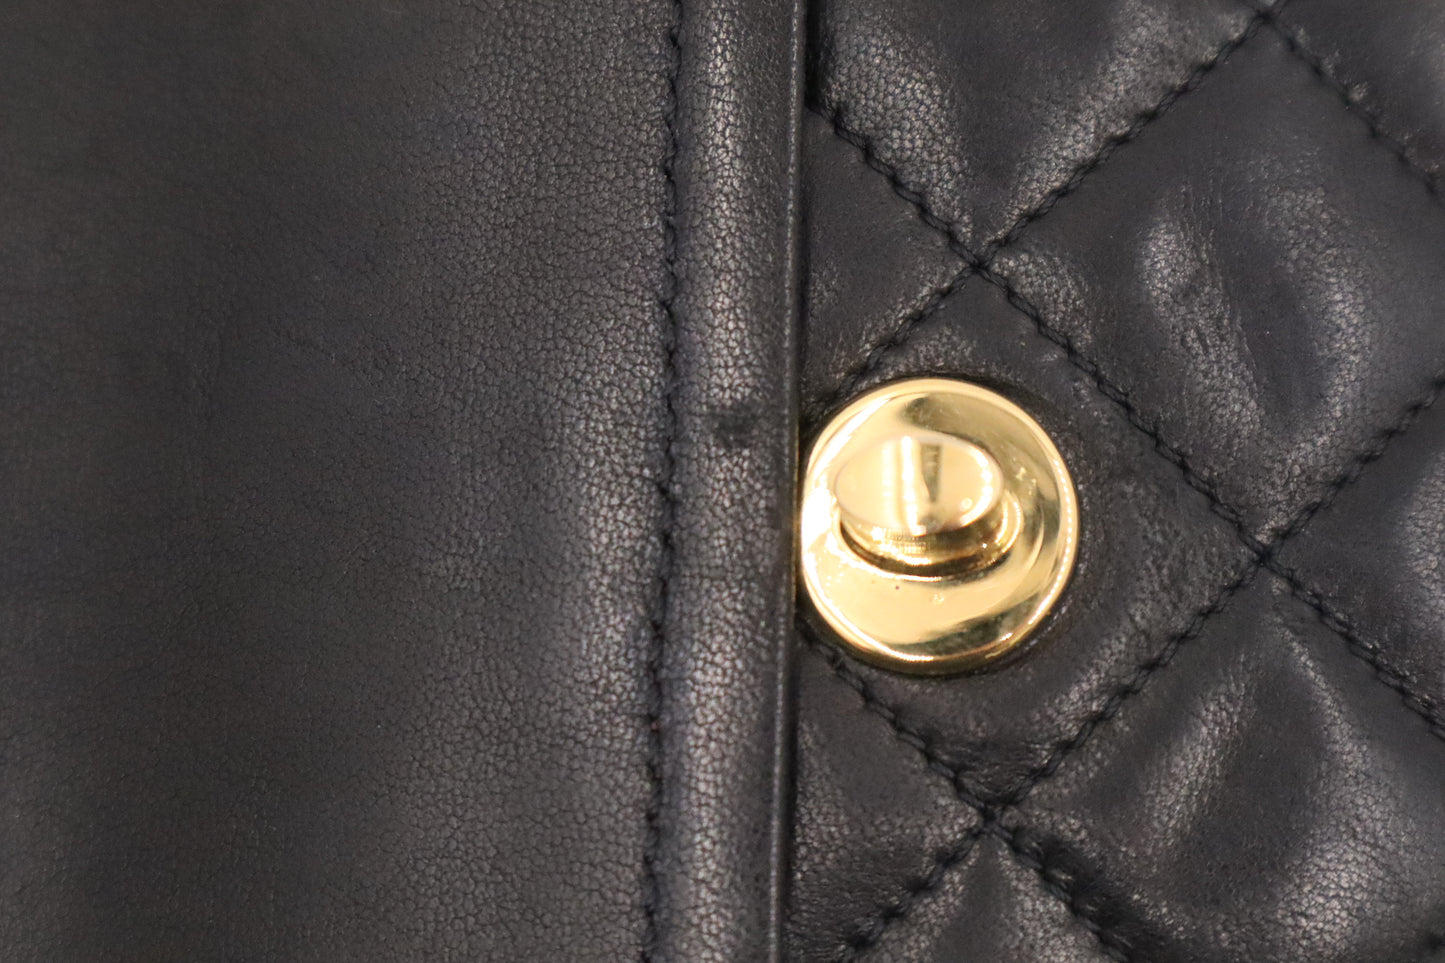 Chanel Small Paris Double Flap in Black Matelassé Leather